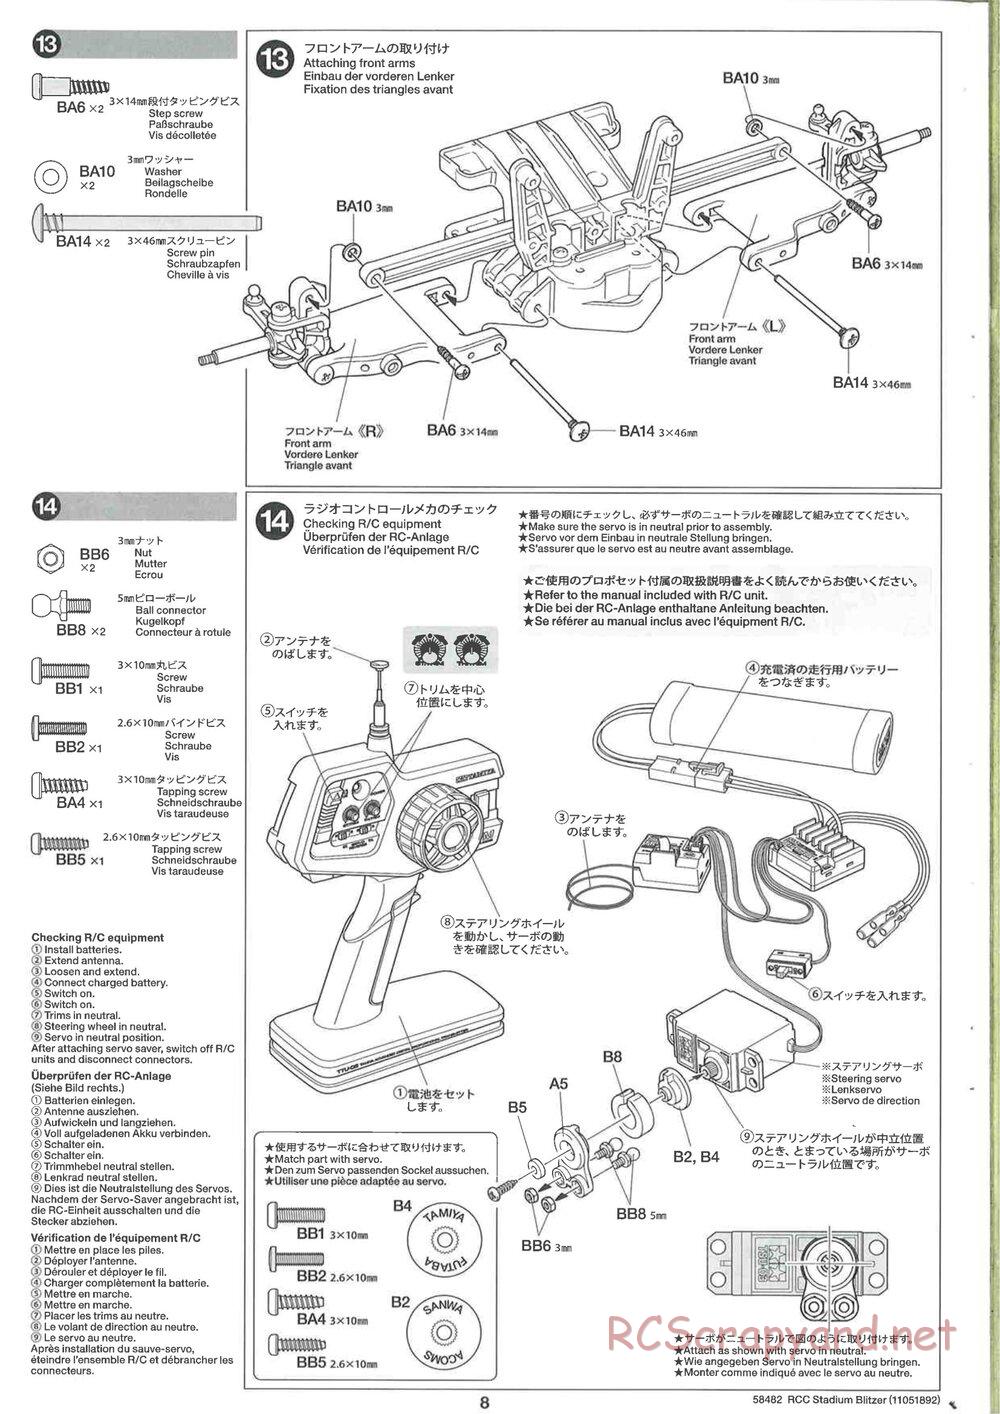 Tamiya - Stadium Blitzer 2010 - FAL Chassis - Manual - Page 8